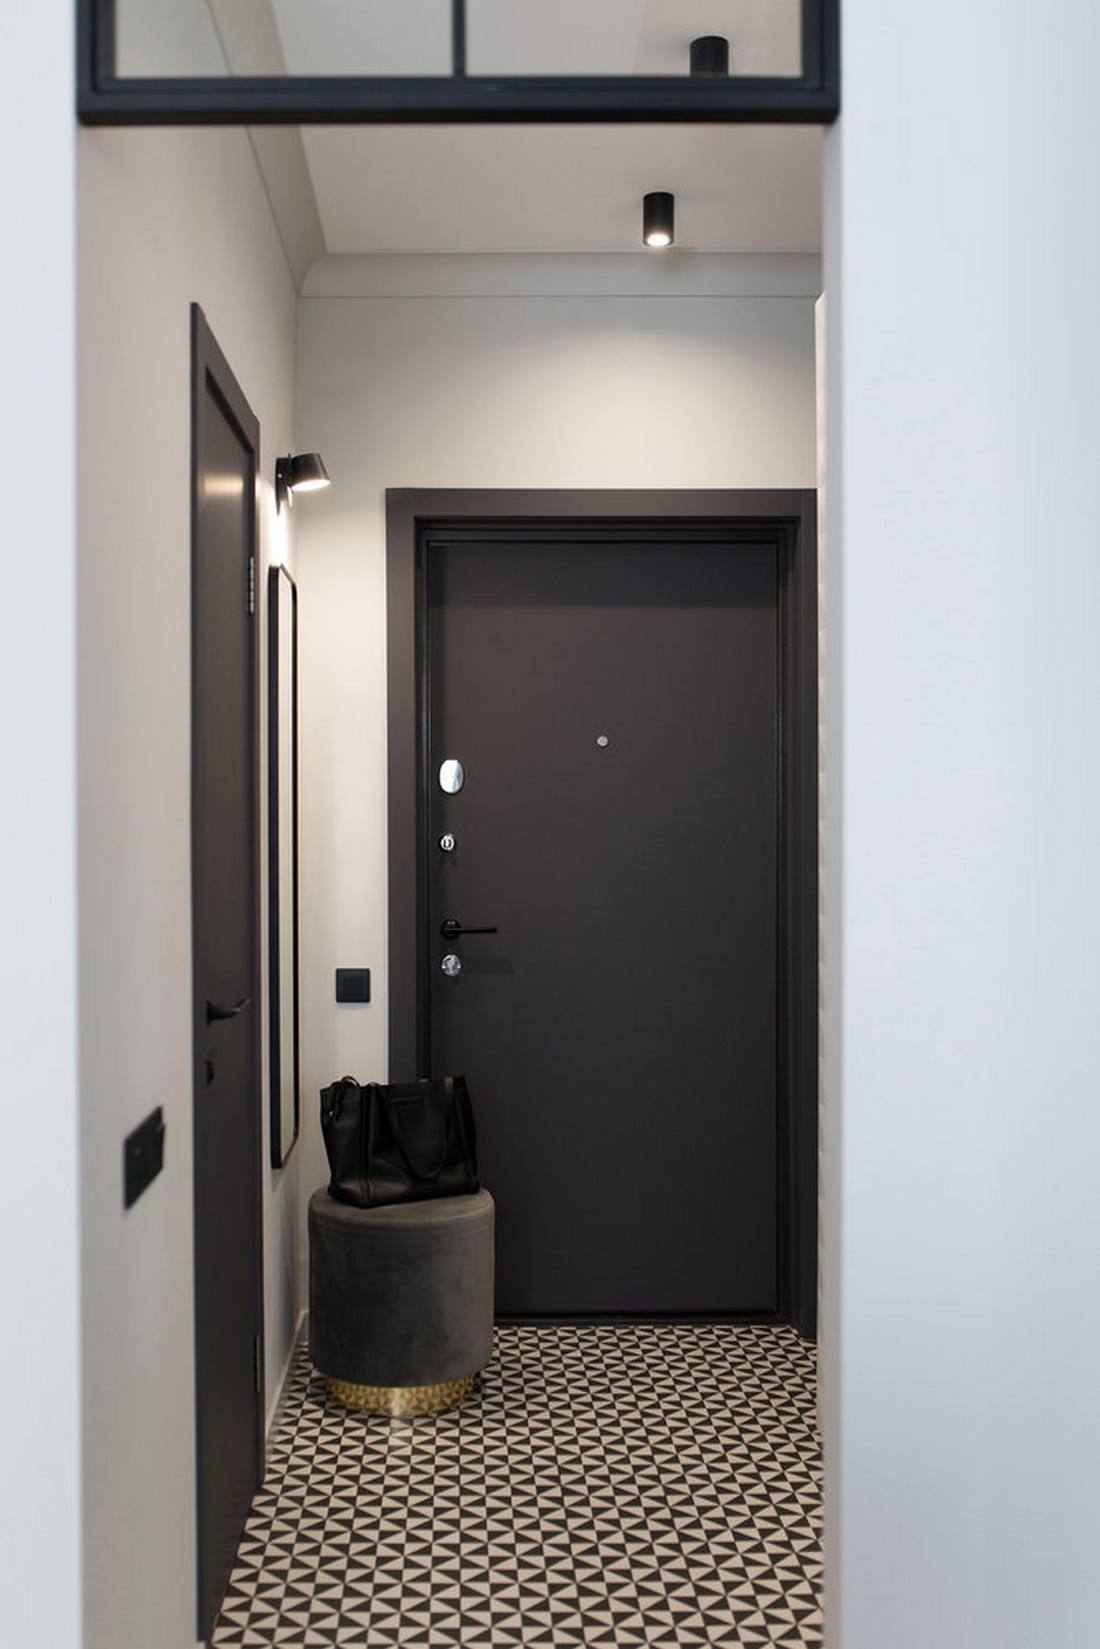 Lối vào căn hộ sử dụng hai gam màu trắng - đen cổ điển tạo cảm giác tò mò ngay từ cái nhìn đầu tiên. Tấm gương soi lắp dọc bức tường, sau chiếc ghế đôn nghỉ chân cùng với gạch bông lát sàn họa tiết truyền thống.